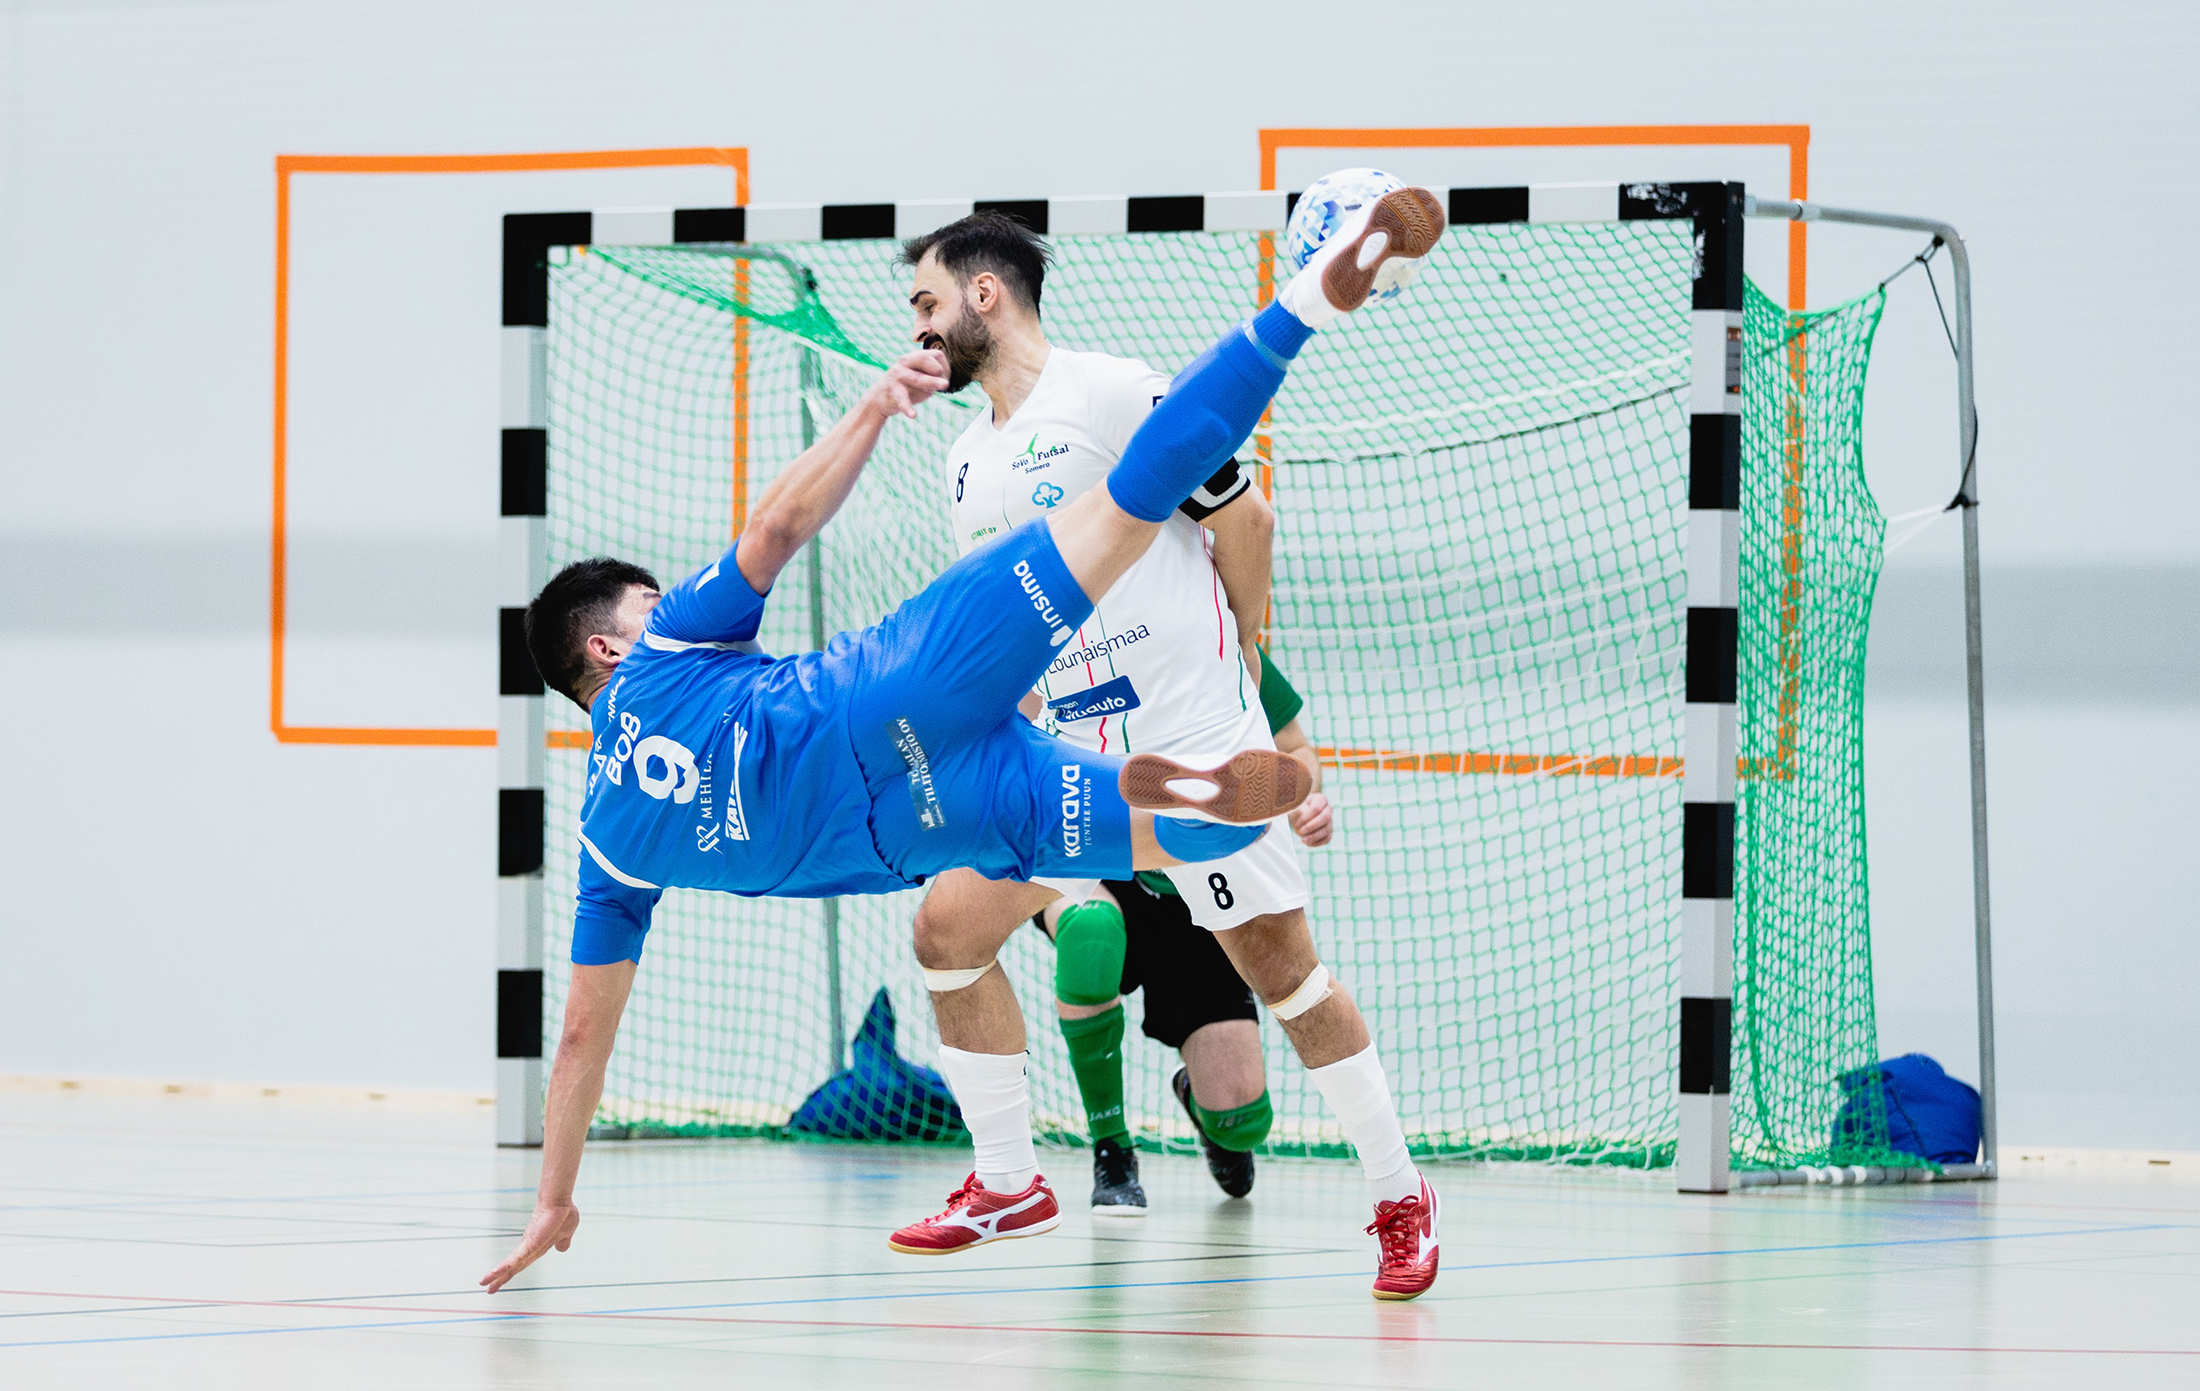 Akaa Futsalilla voitokas viikonloppu – Finaalipaikka katkolla ensi lauantaina kotihallissa